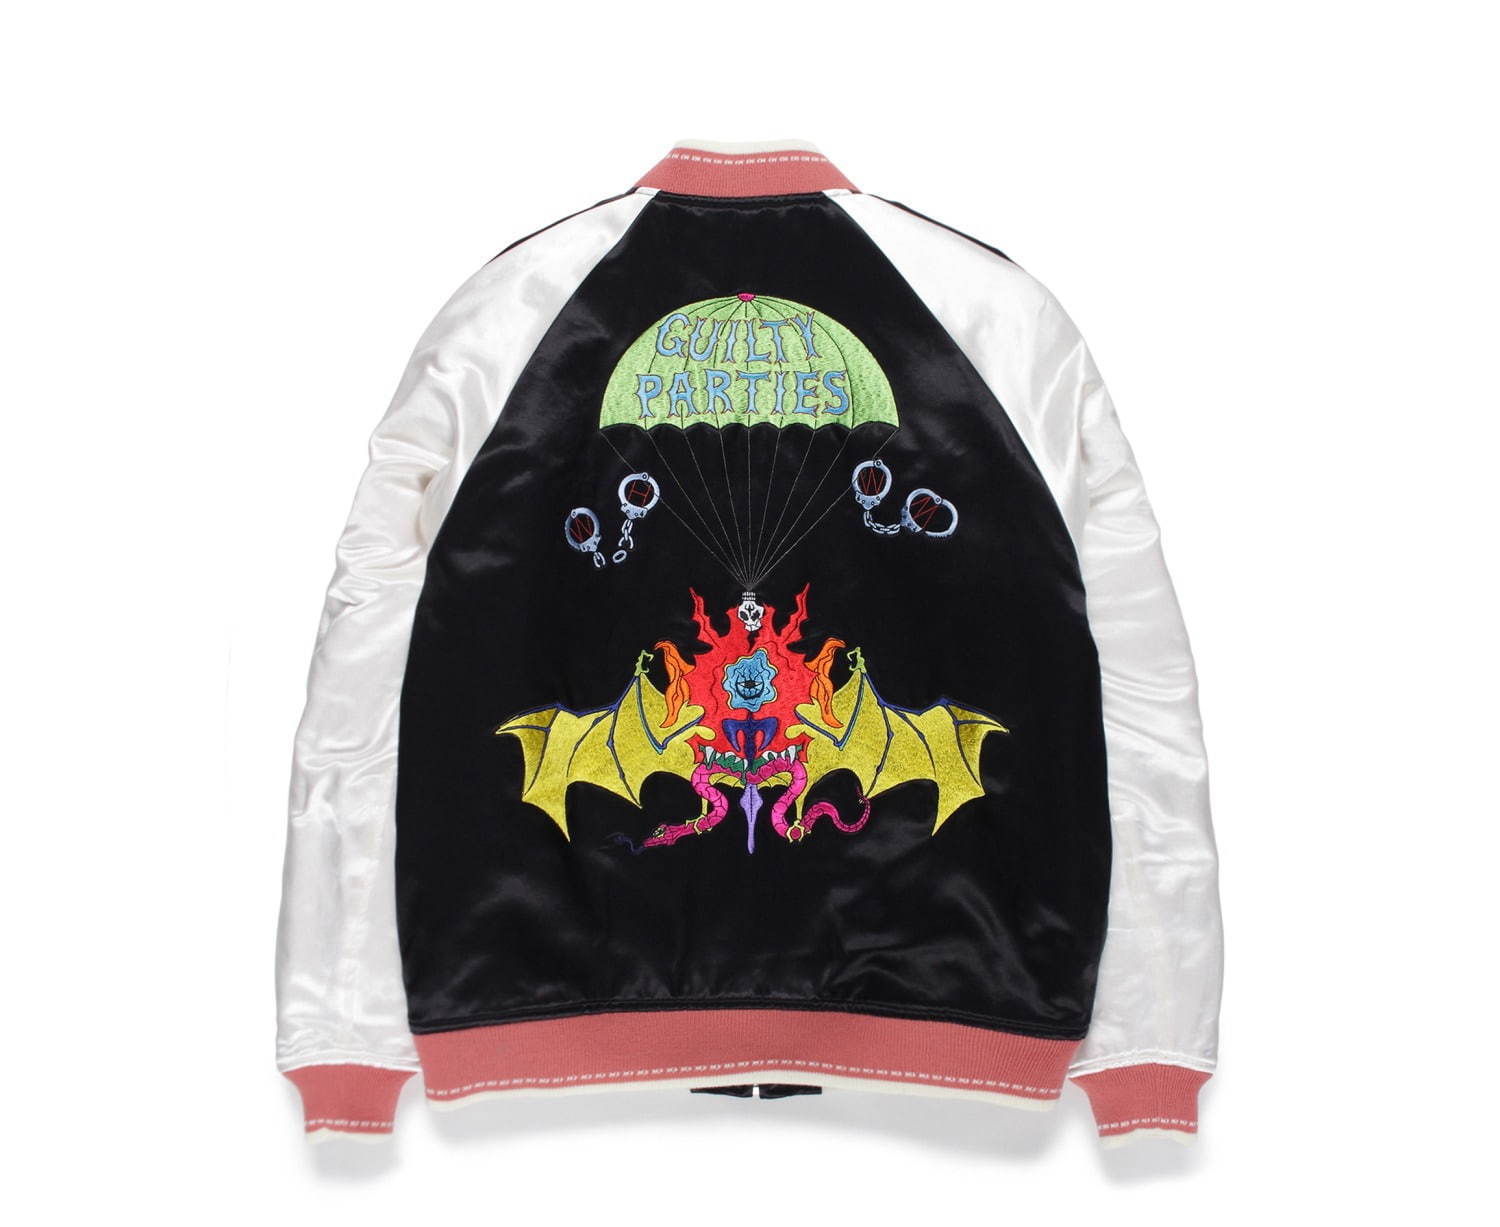 ワコマリア×ウルフズヘッド“グラフィック刺繍”を配したスカジャケット